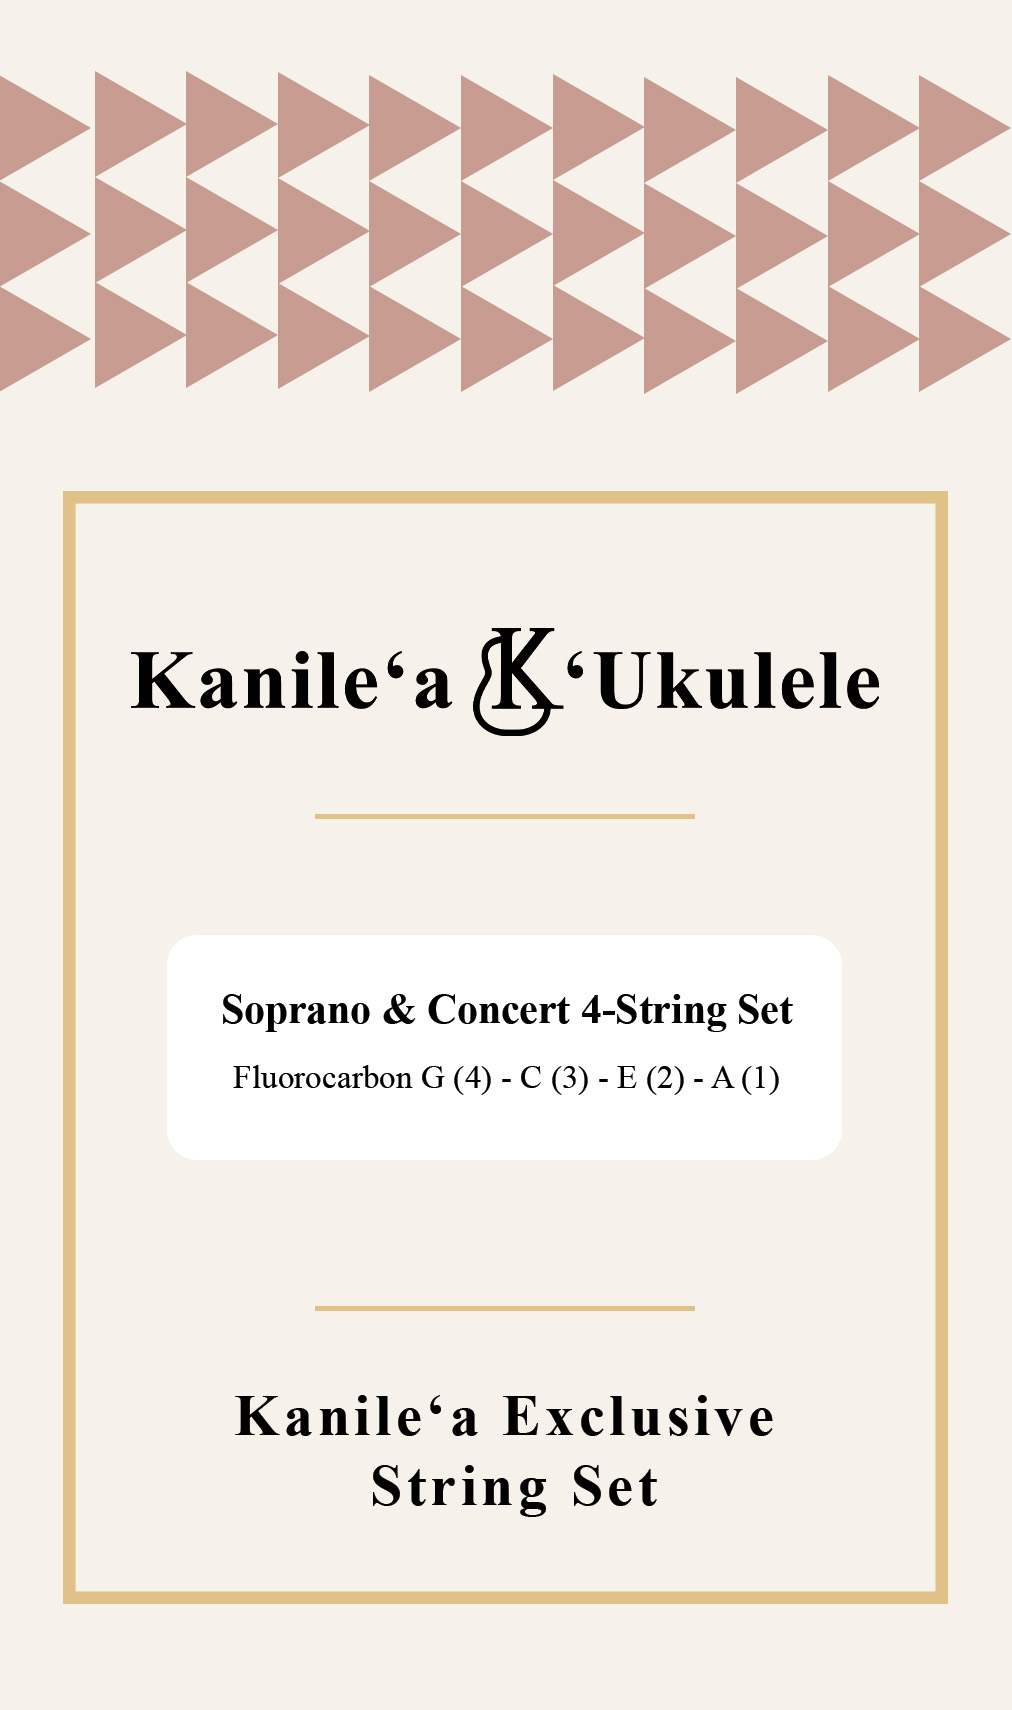 Kanile'a X Worth | G (Standard) 'Ukulele for Soprano, Super Soprano, and Concert 'Ukuleles - 'Ukulele